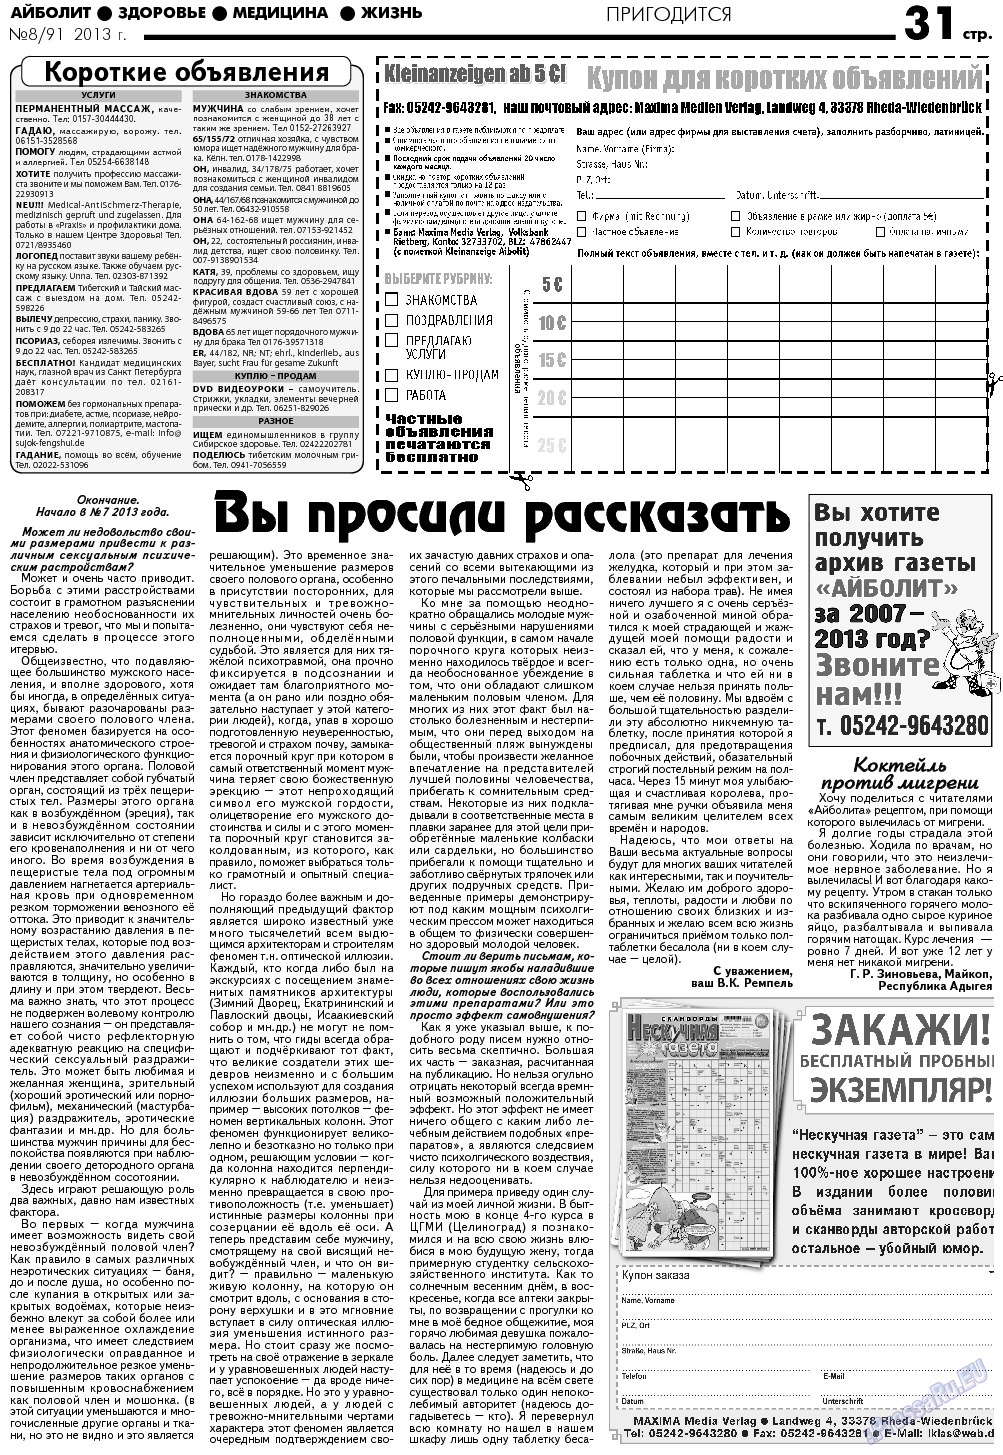 АйБолит, газета. 2013 №8 стр.31